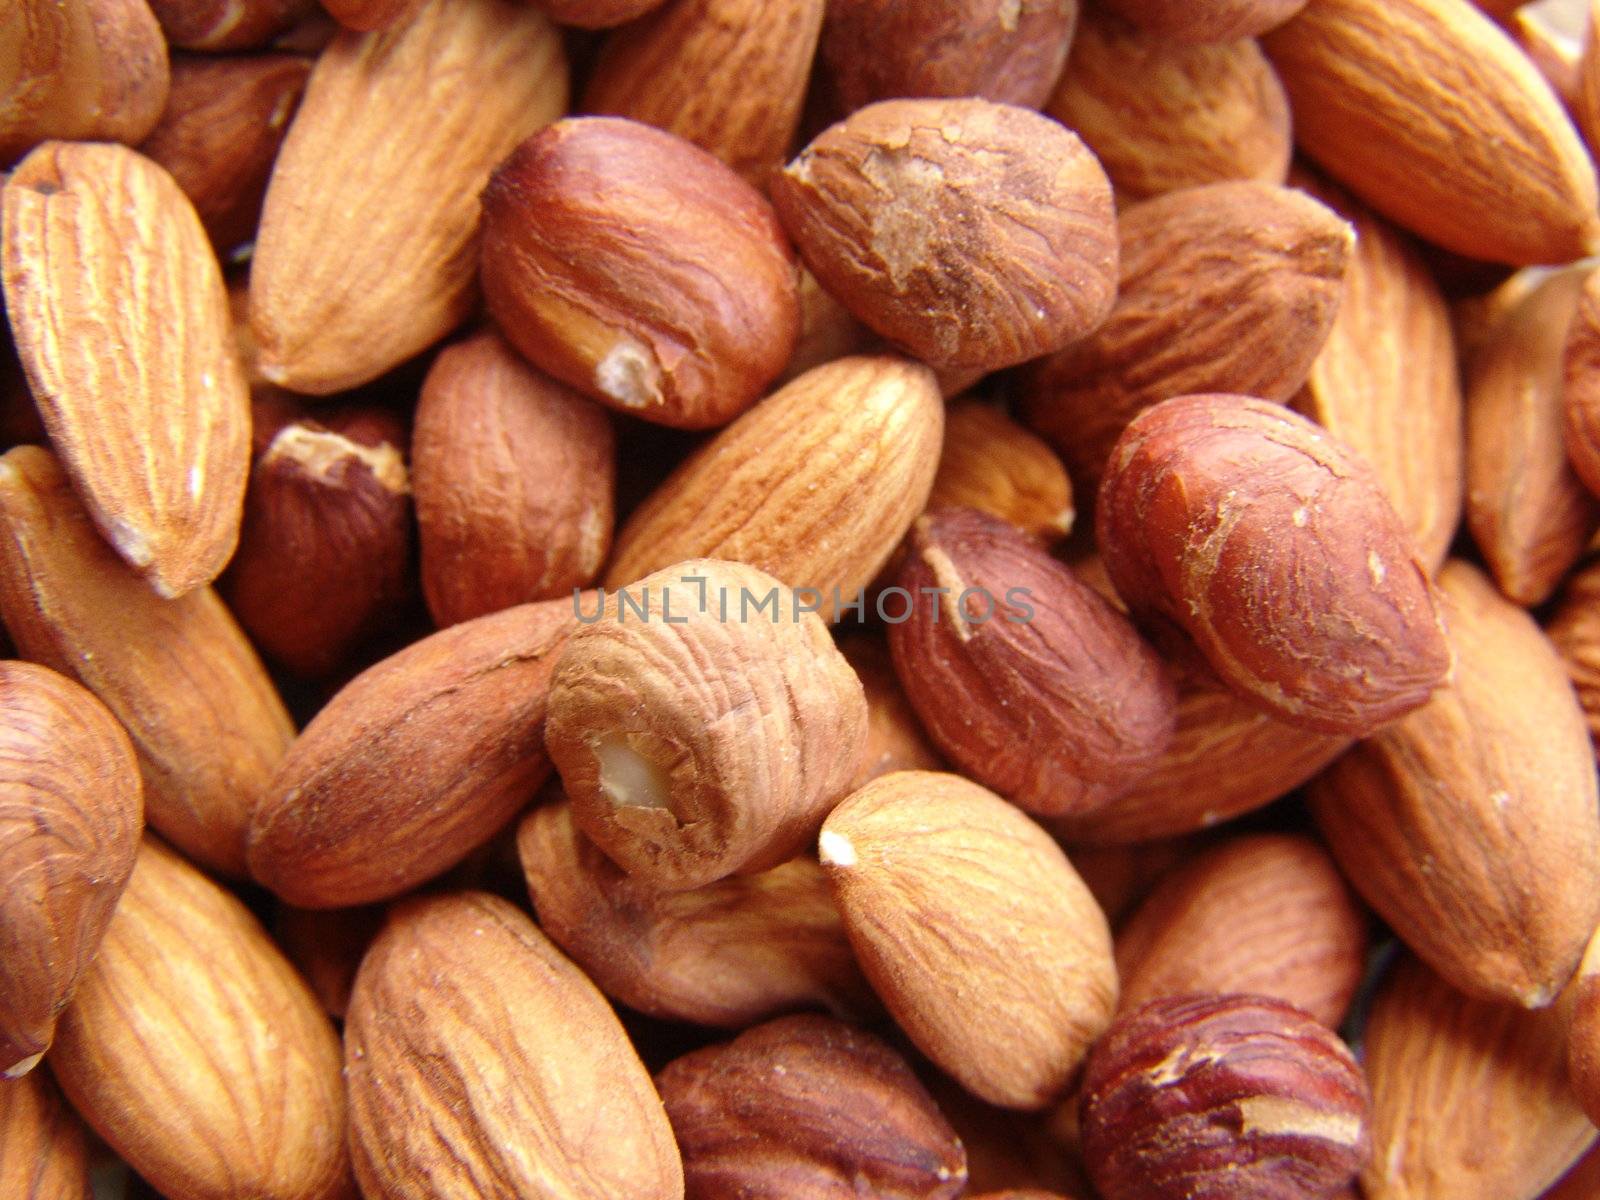 Almonds and hazelnuts by raliand